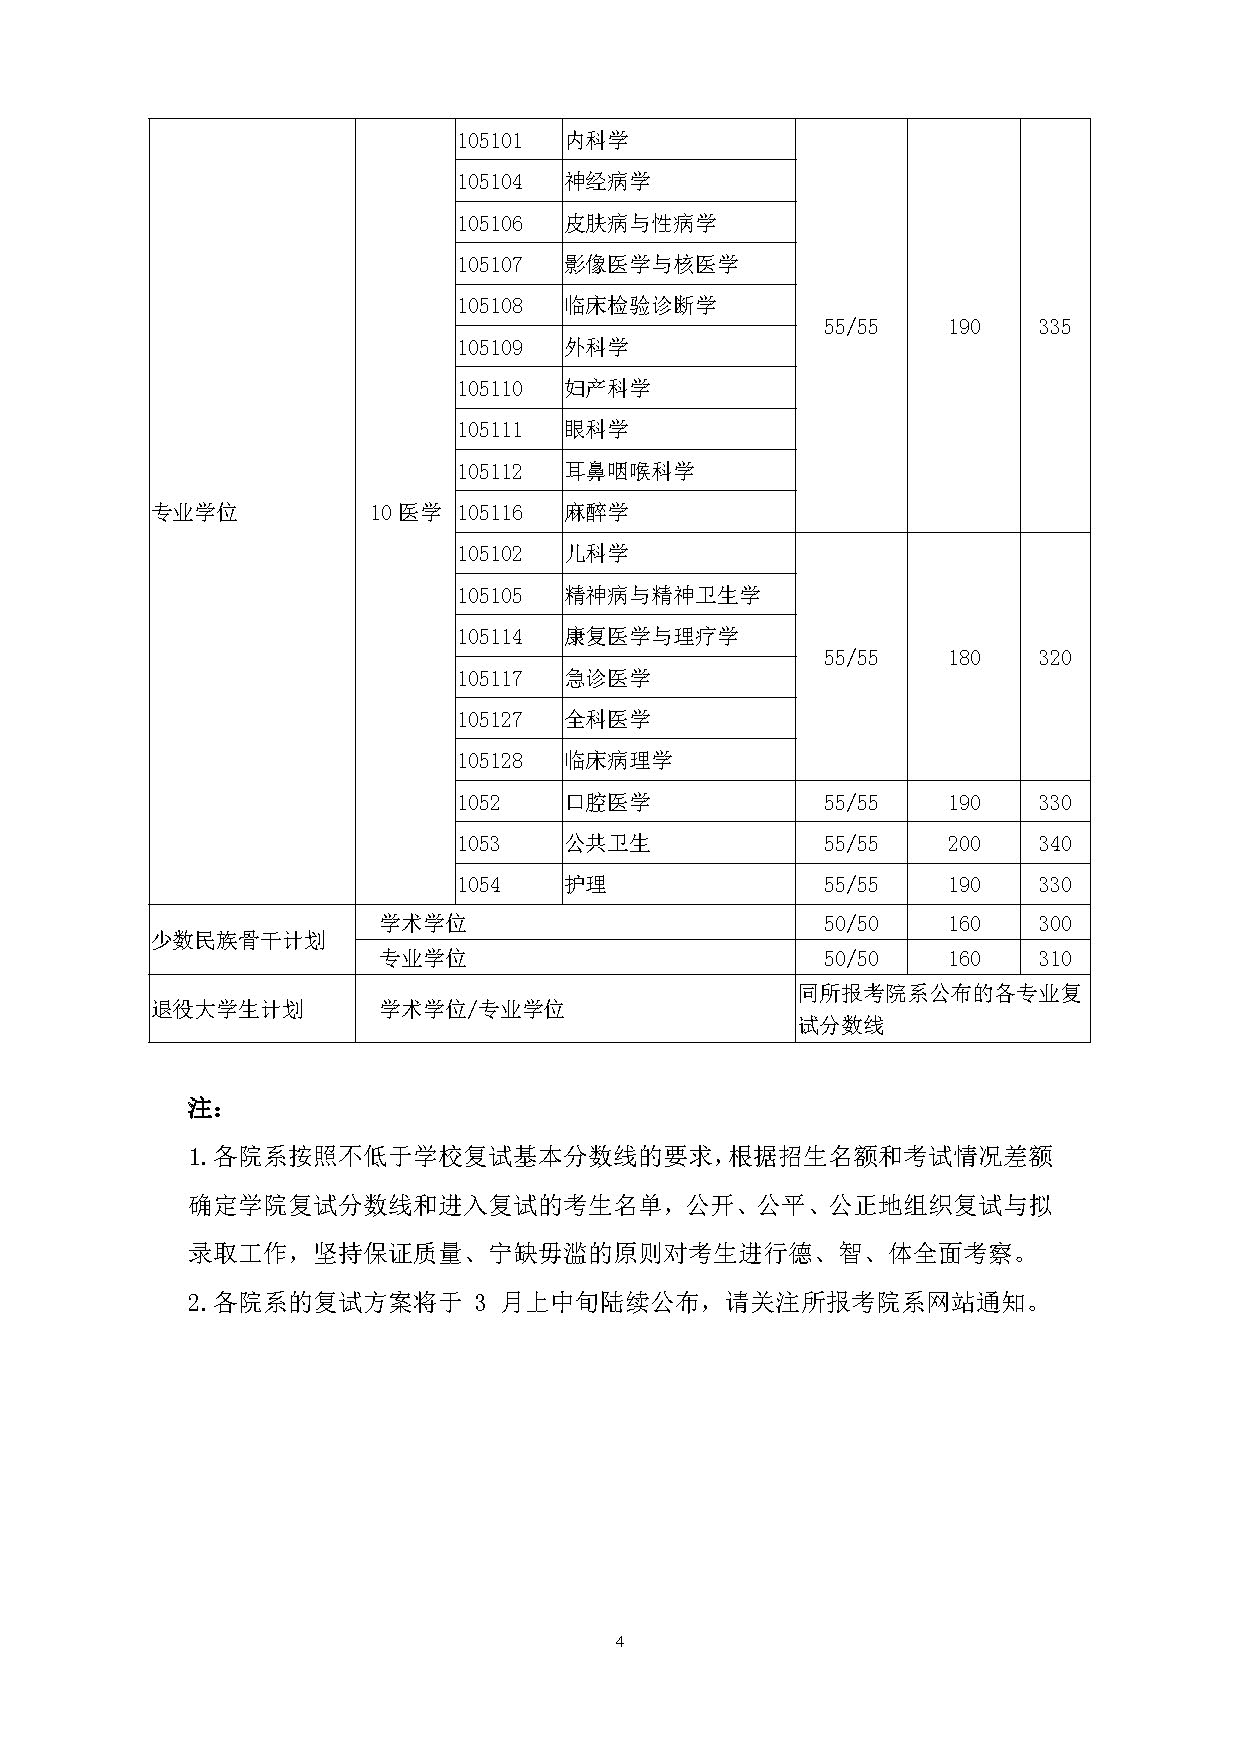 上海交通大学2019年考研复试基本分数线